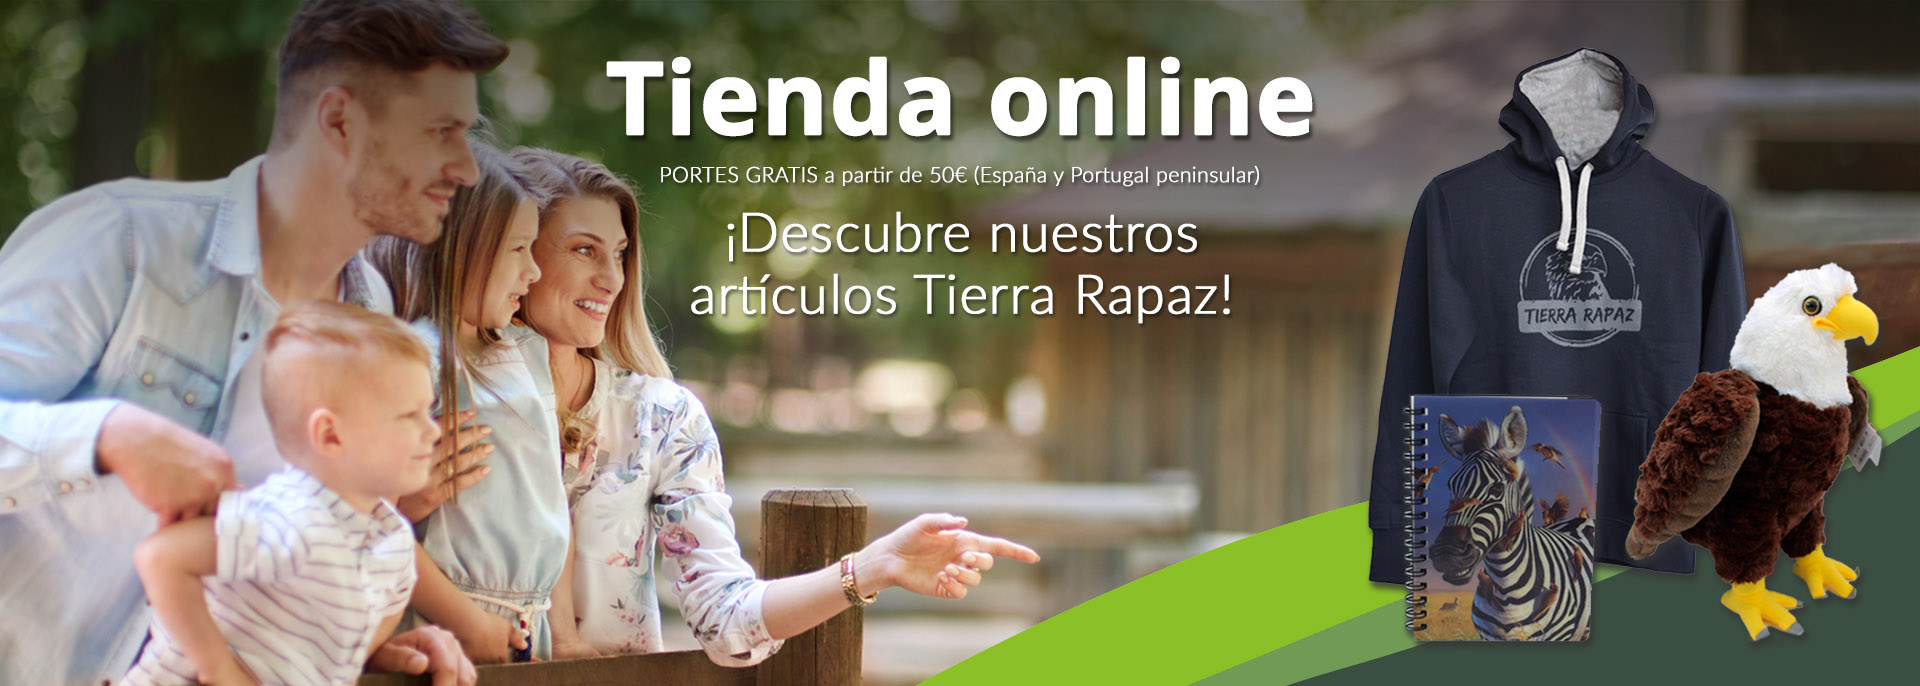 Tienda online Tierra Rapaz